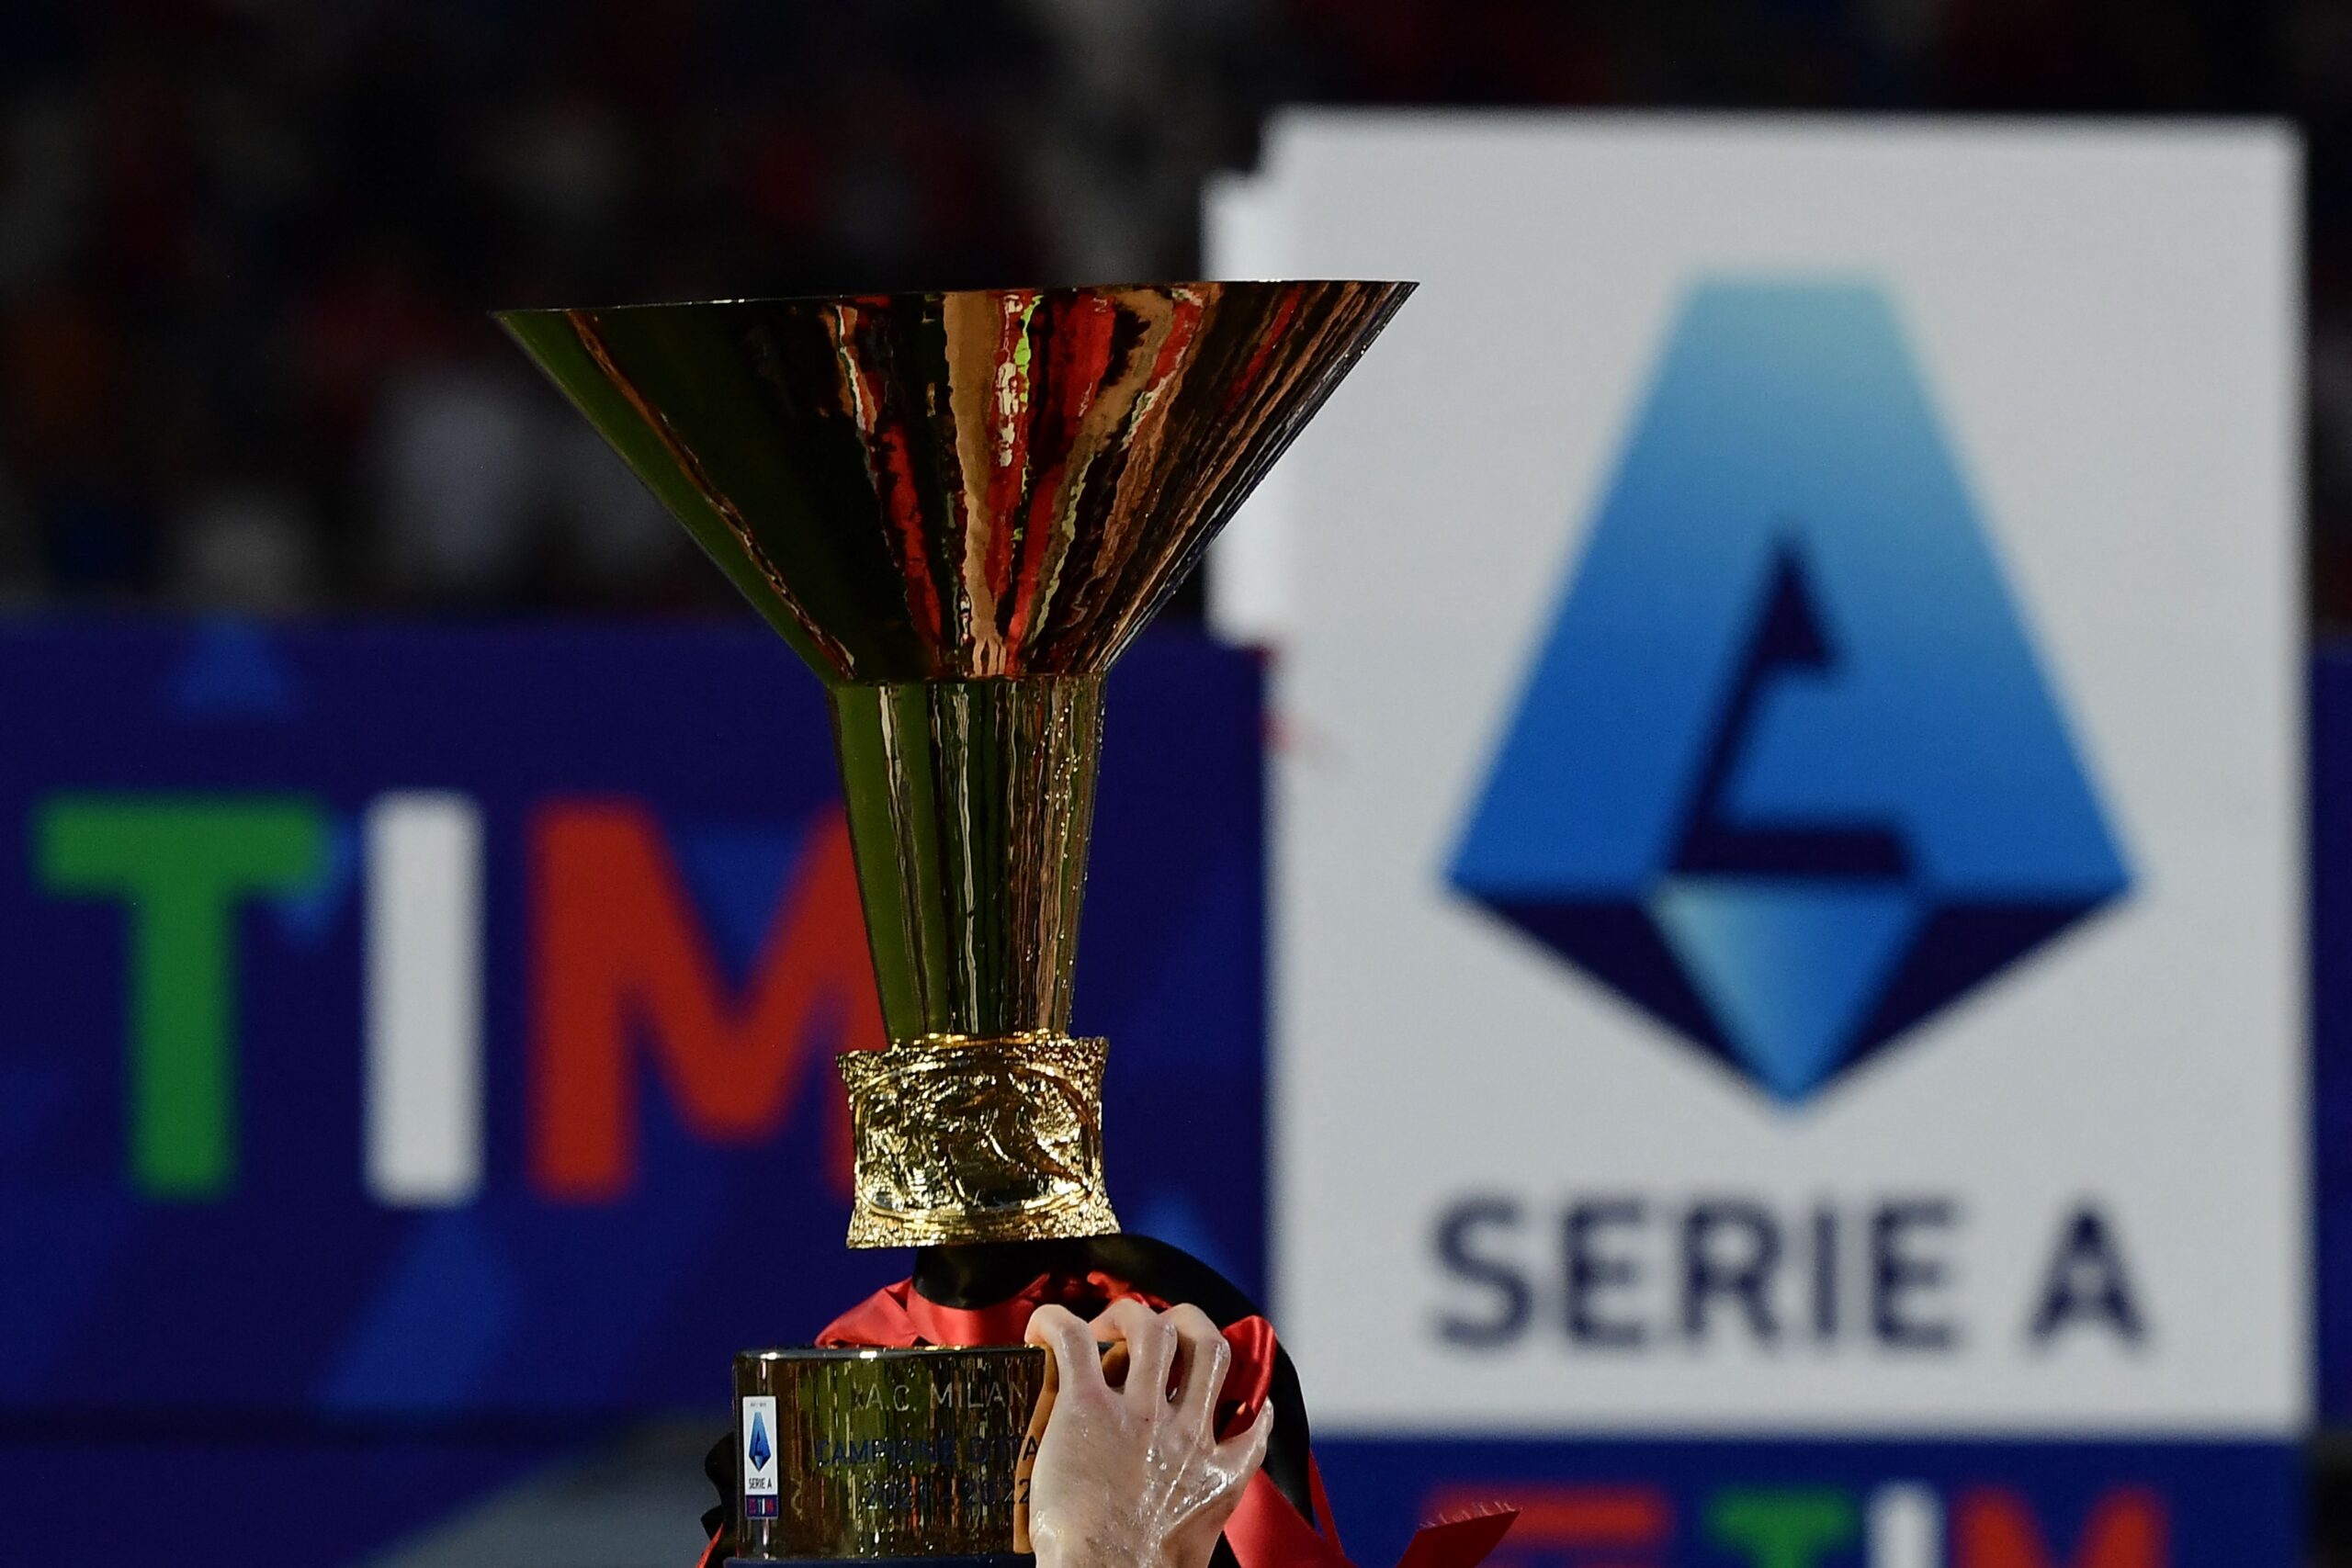 Palermo é rebaixado para a série D do campeonato italiano, futebol italiano